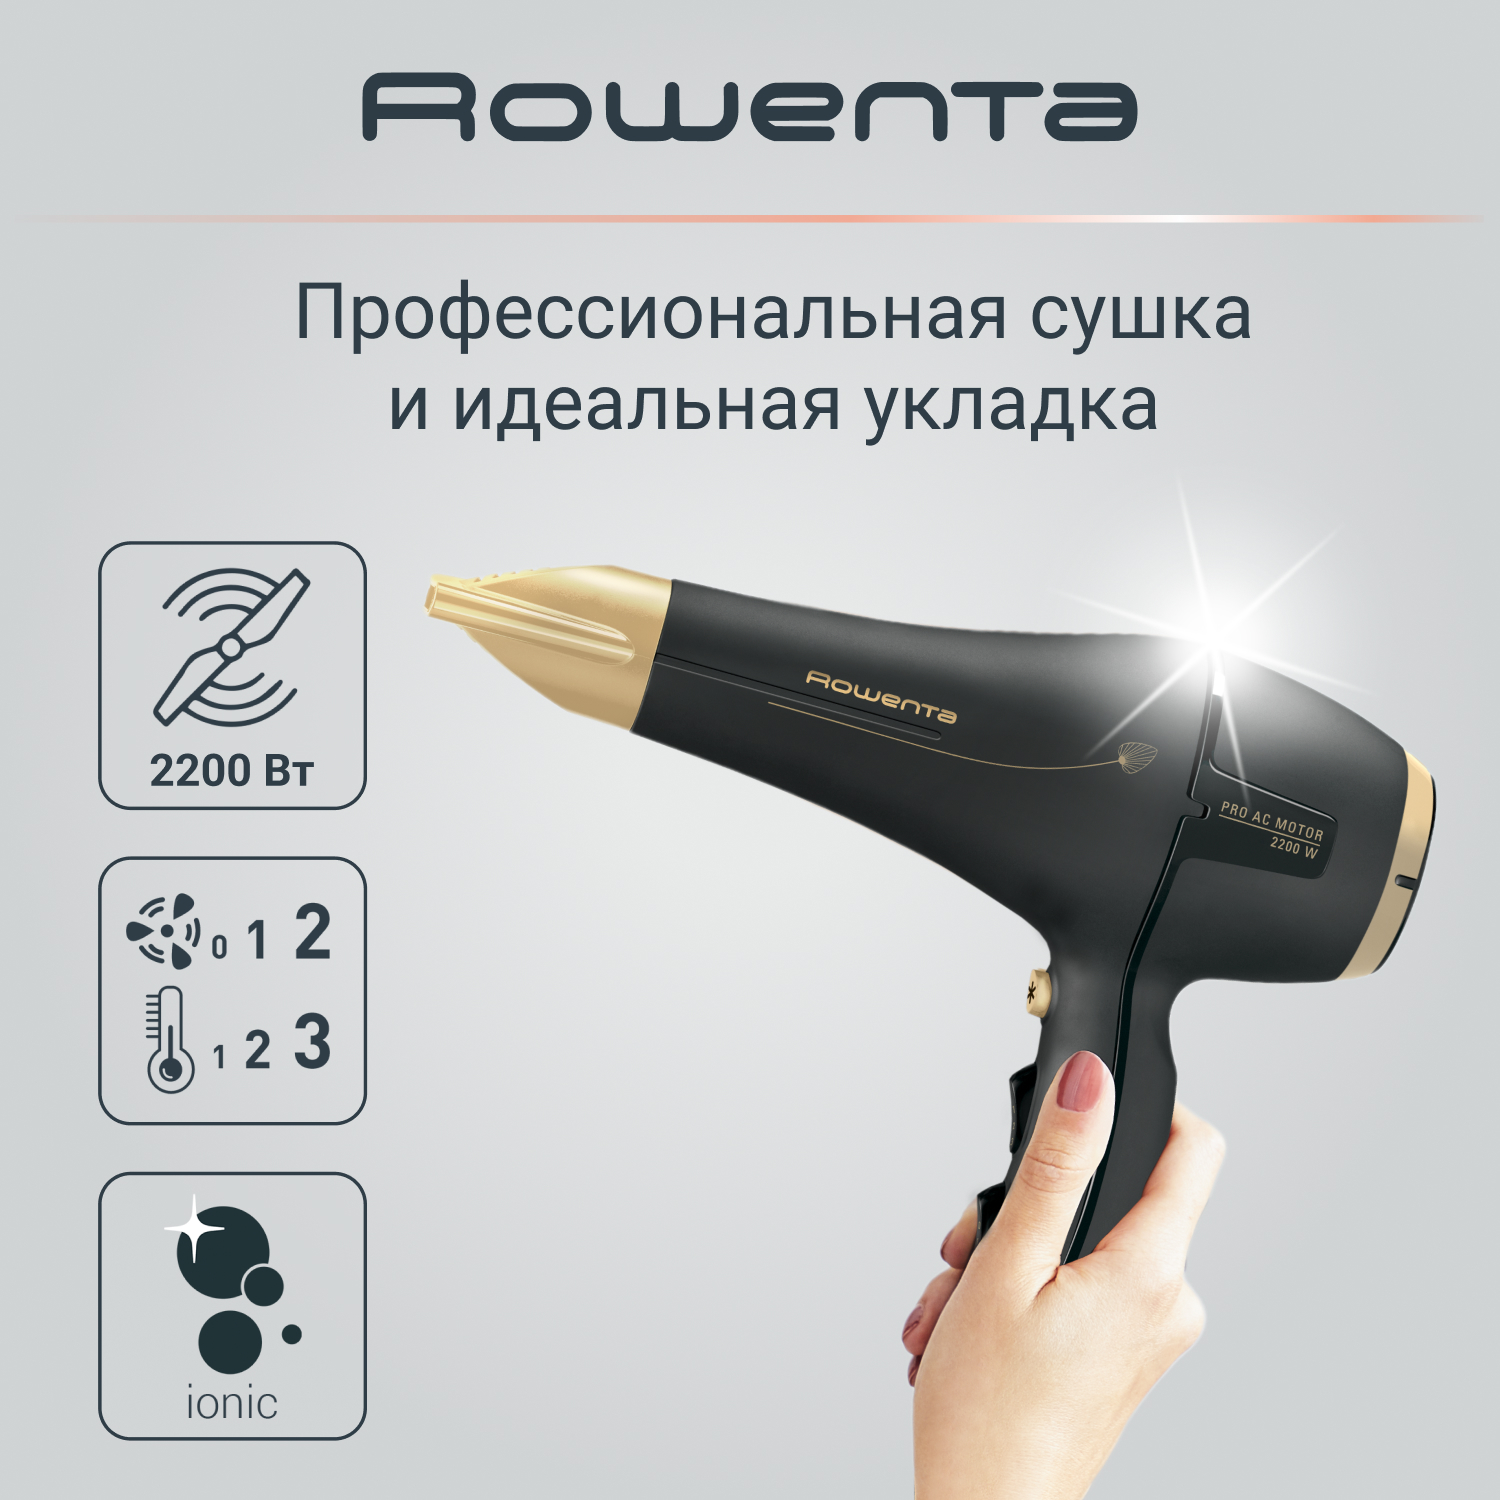 Фен Rowenta Signature Pro AC Magic Nature CV7846F0, 2200 Вт, черный/золотой штаны terror signature белый